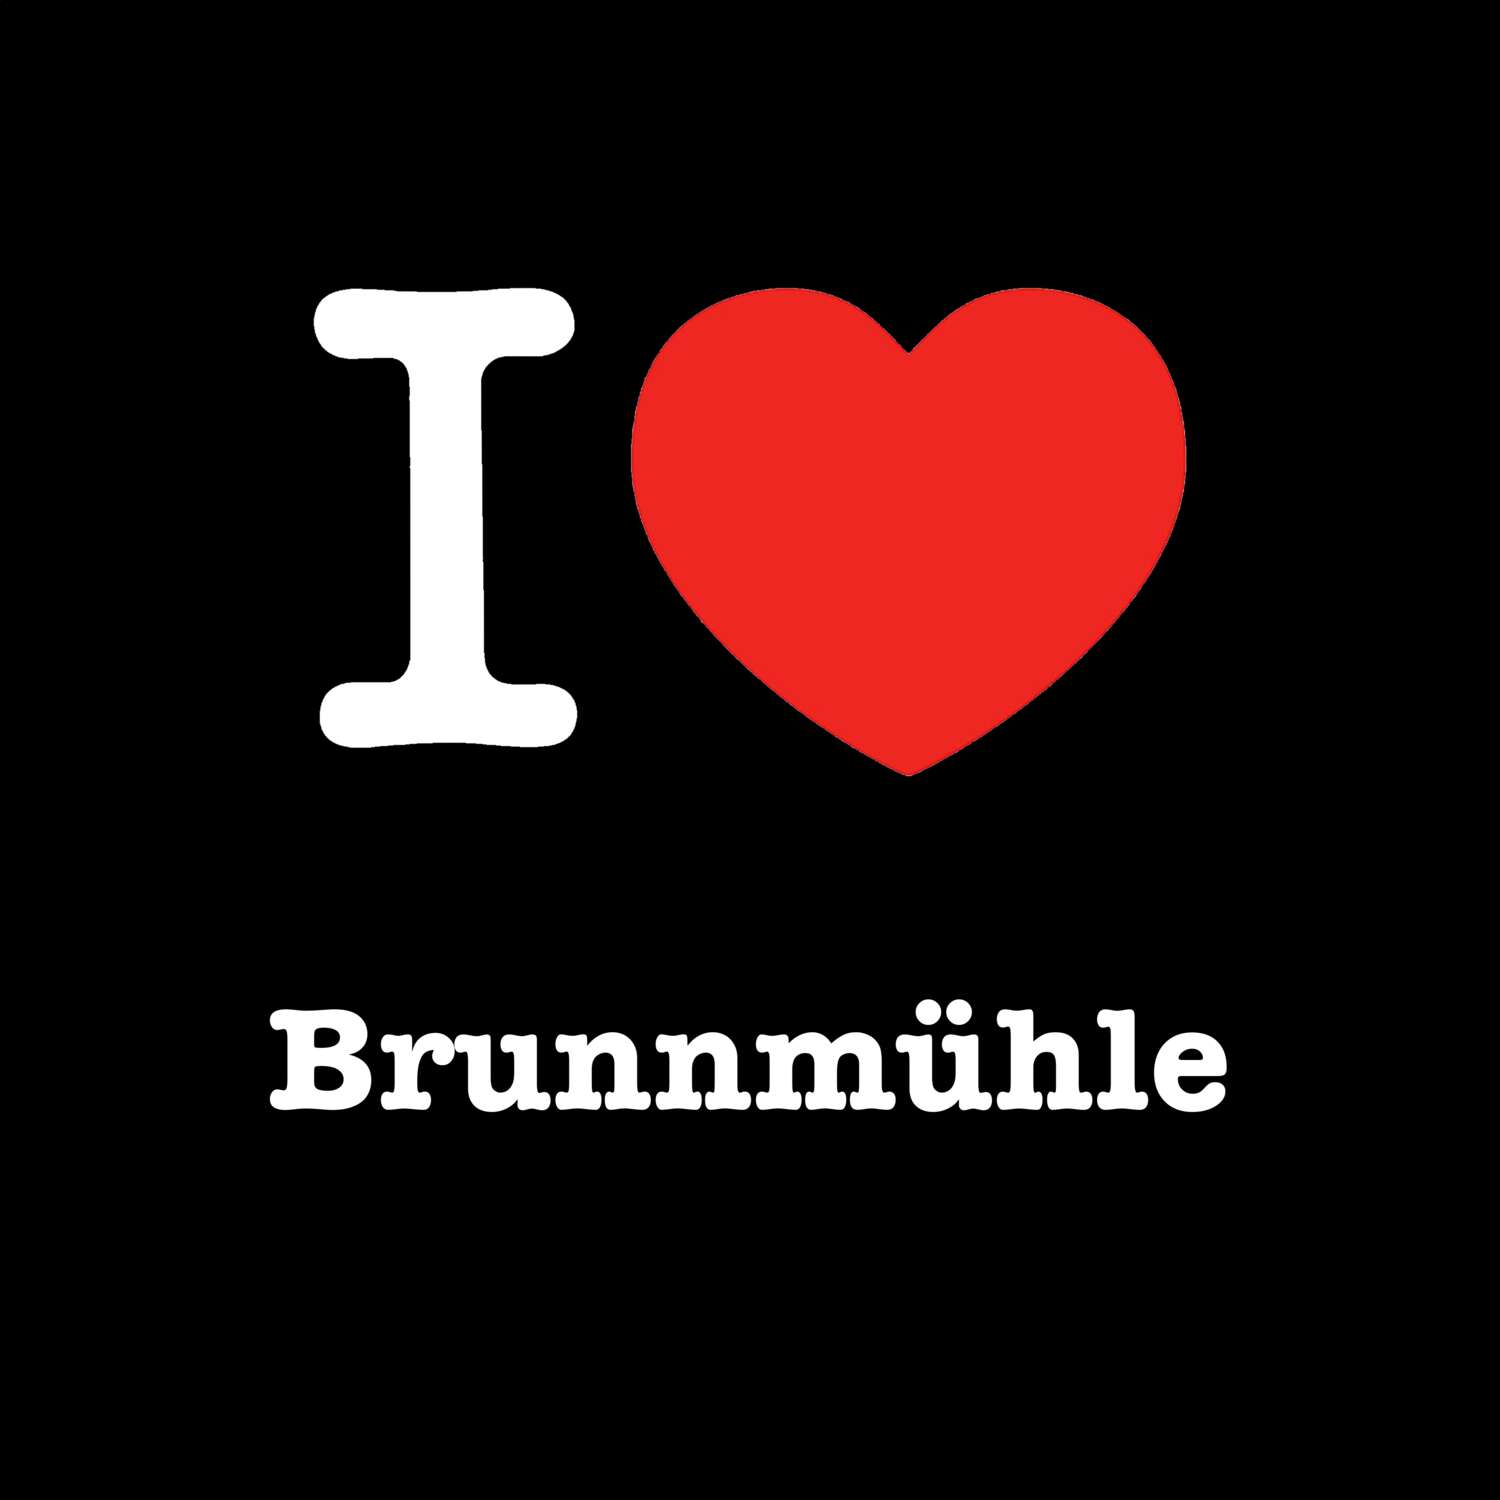 Brunnmühle T-Shirt »I love«